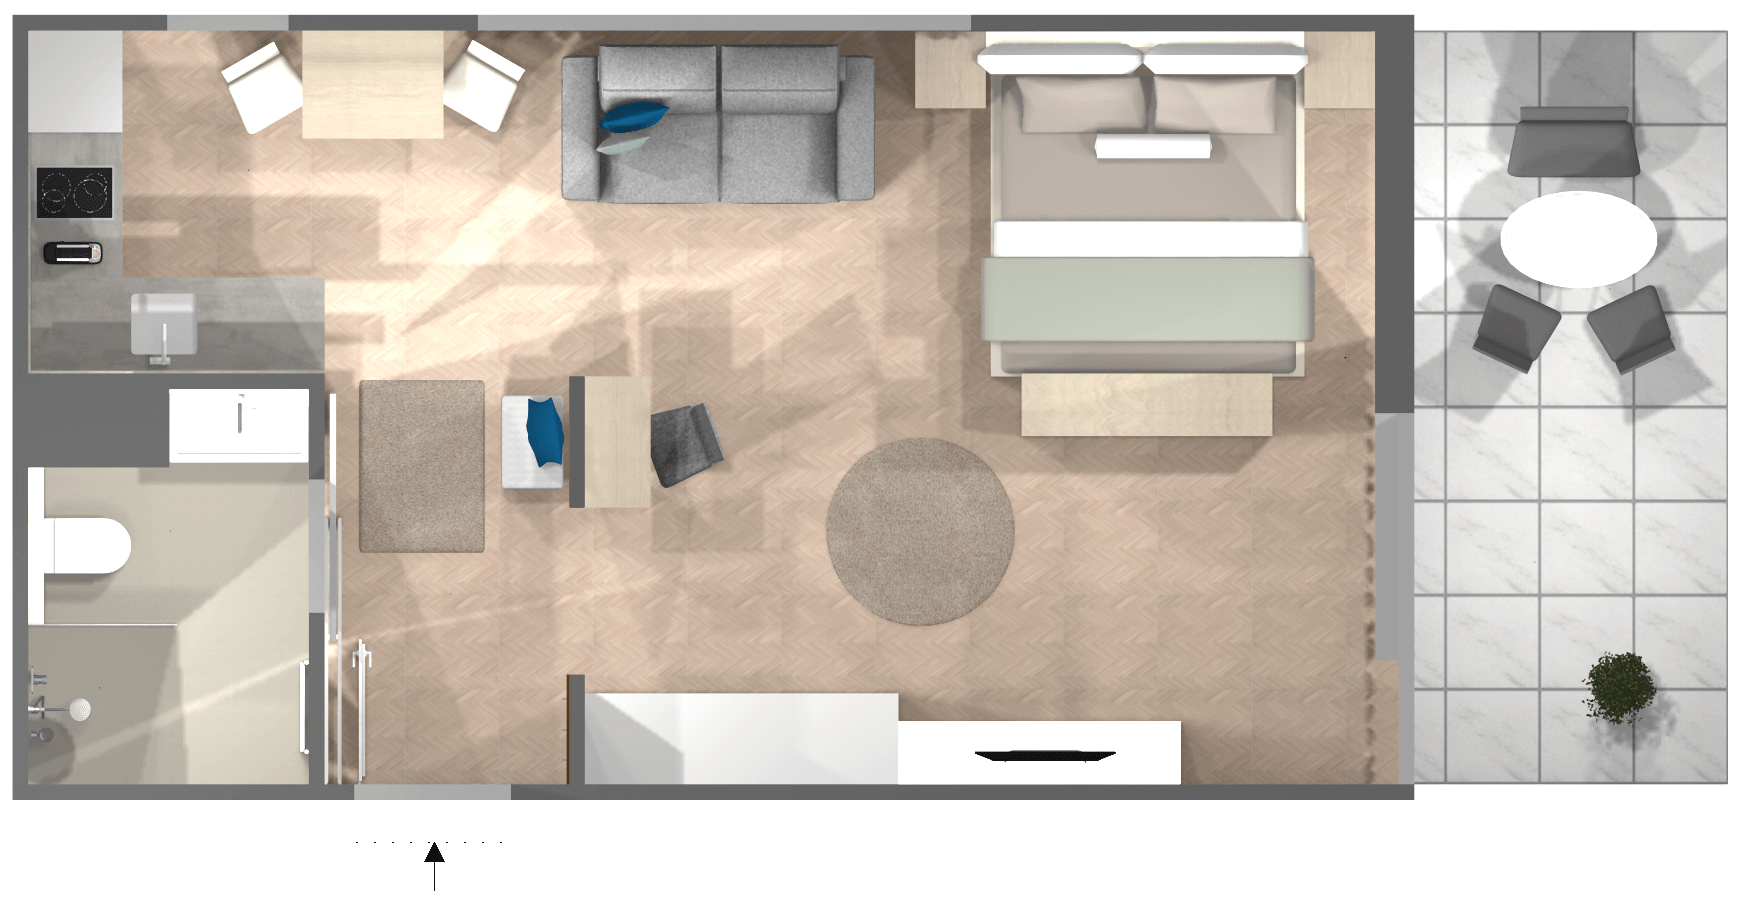 Qm Wohnzimmer Kleines Wohnzimmer Mit Essbereich Einrichten Ikea Caseconrad Com